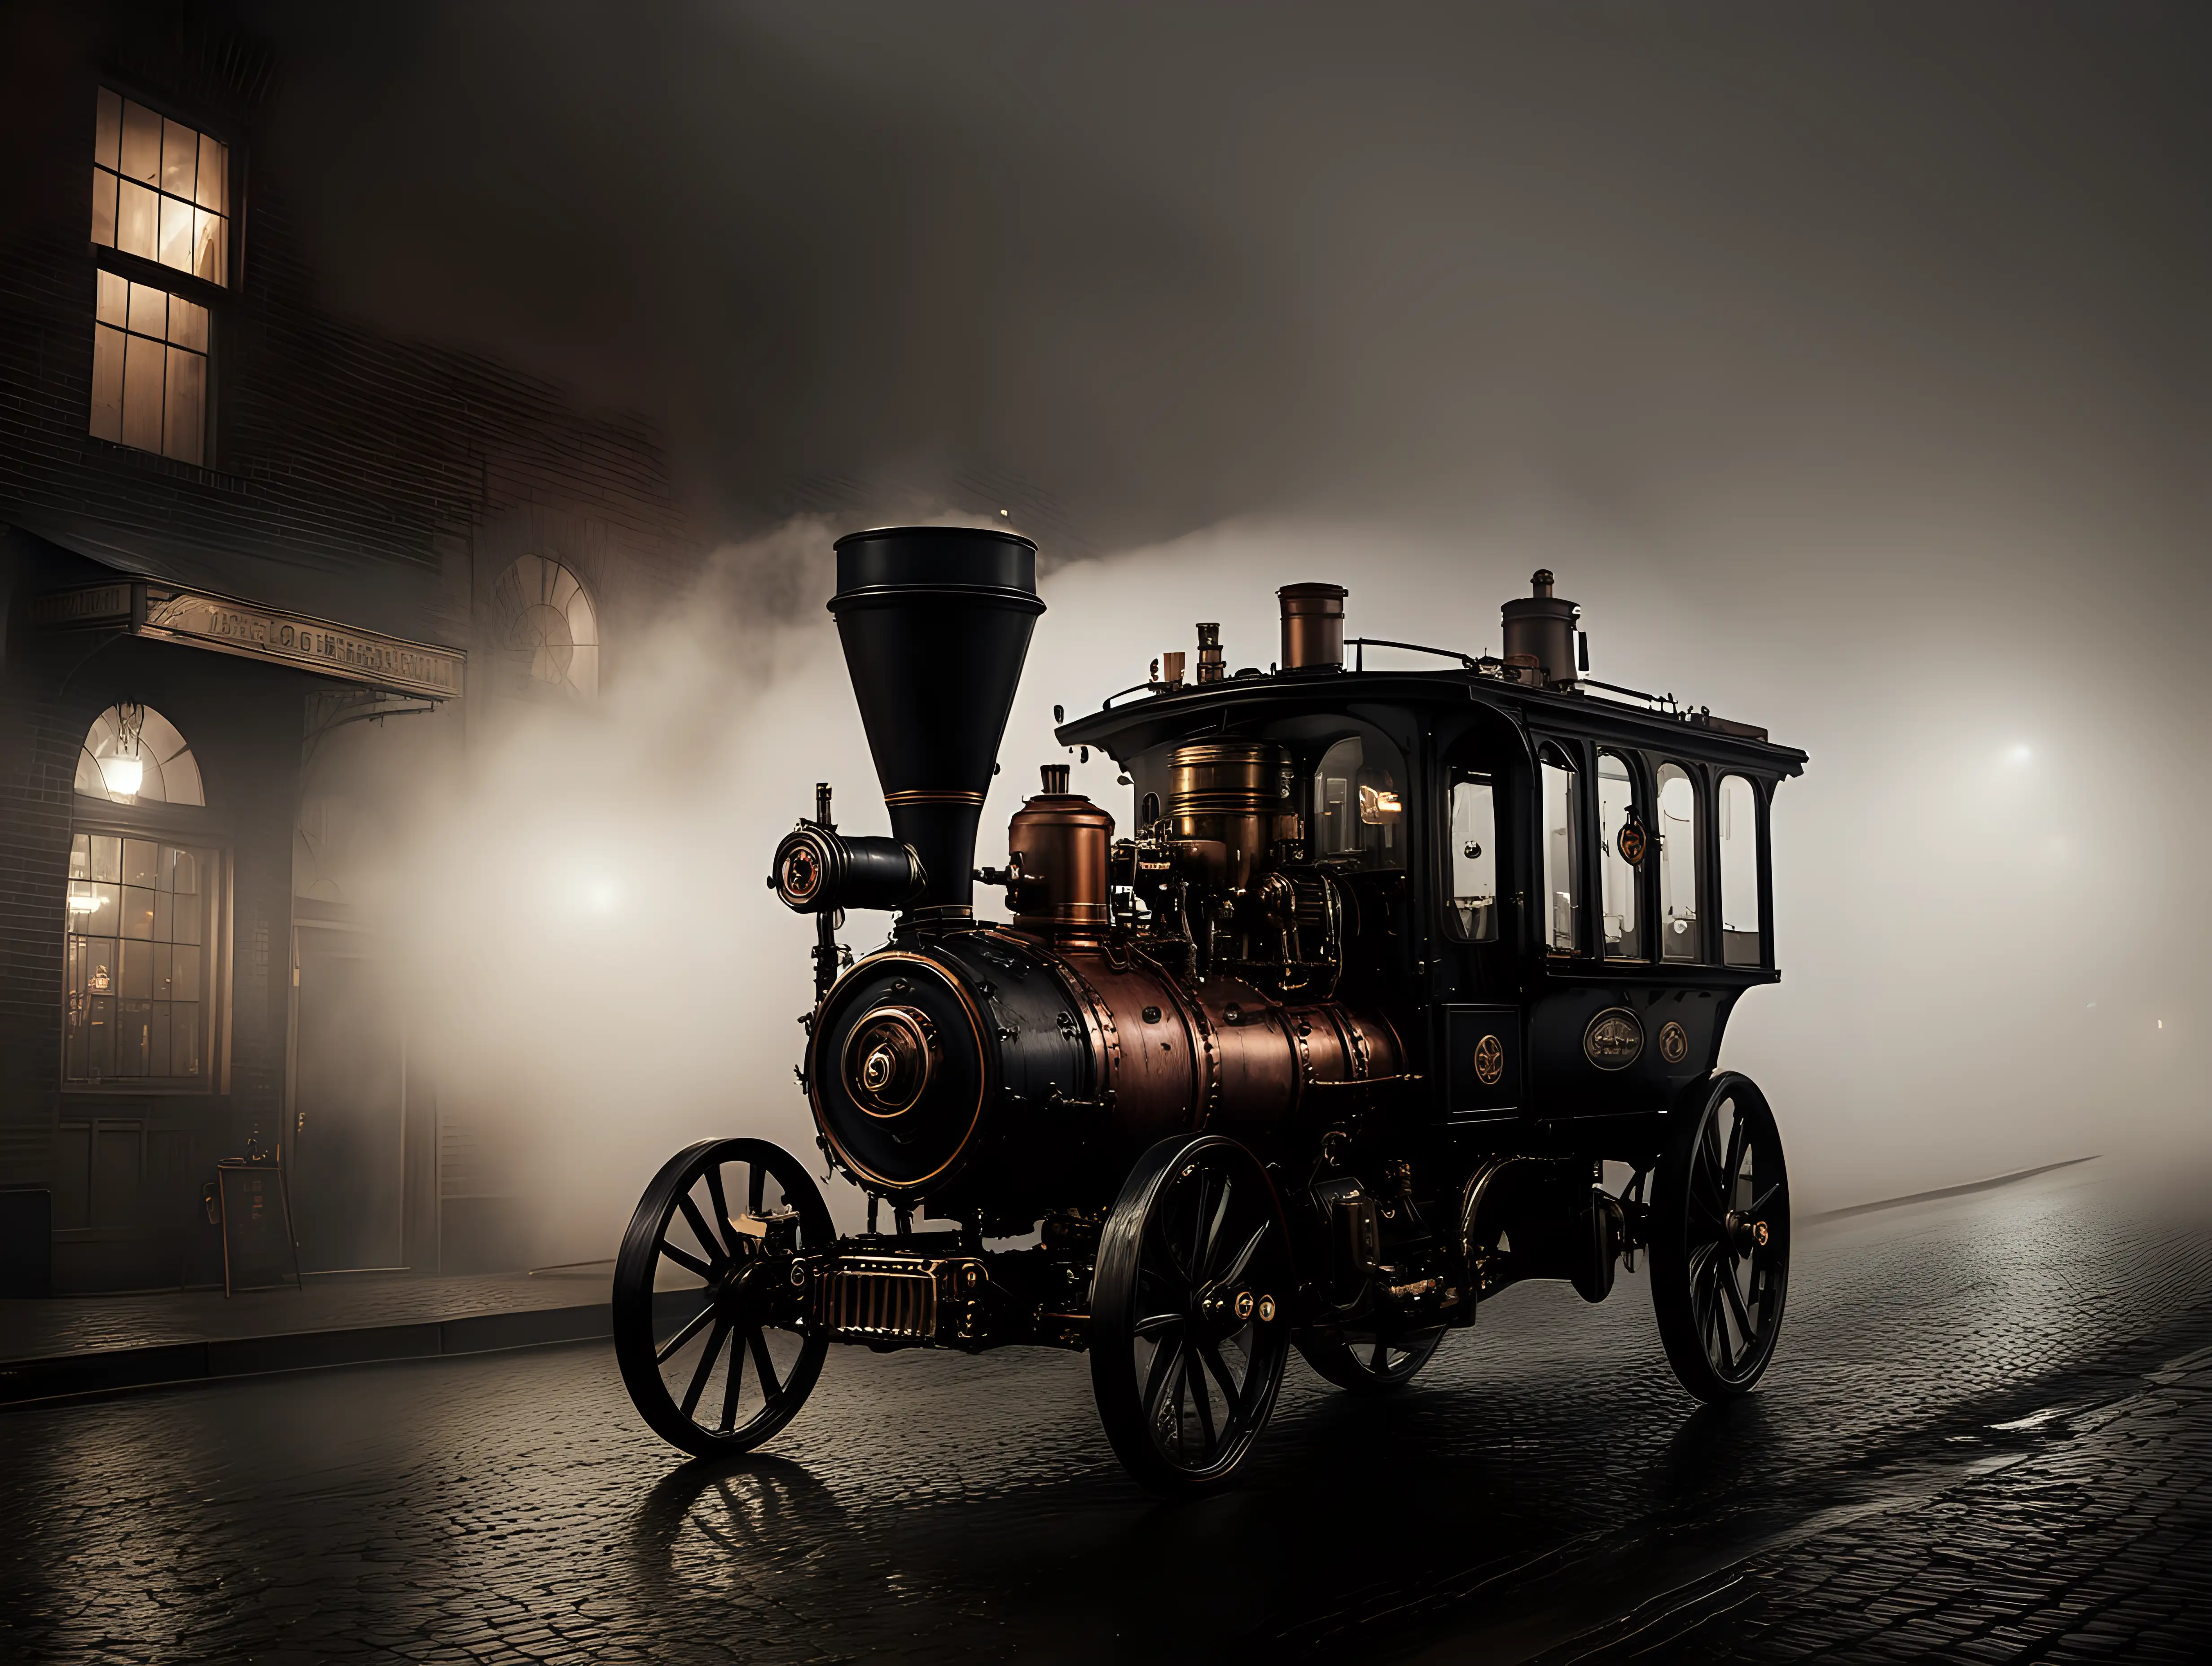 Steampunk Car on Dark City Street Amidst Fog